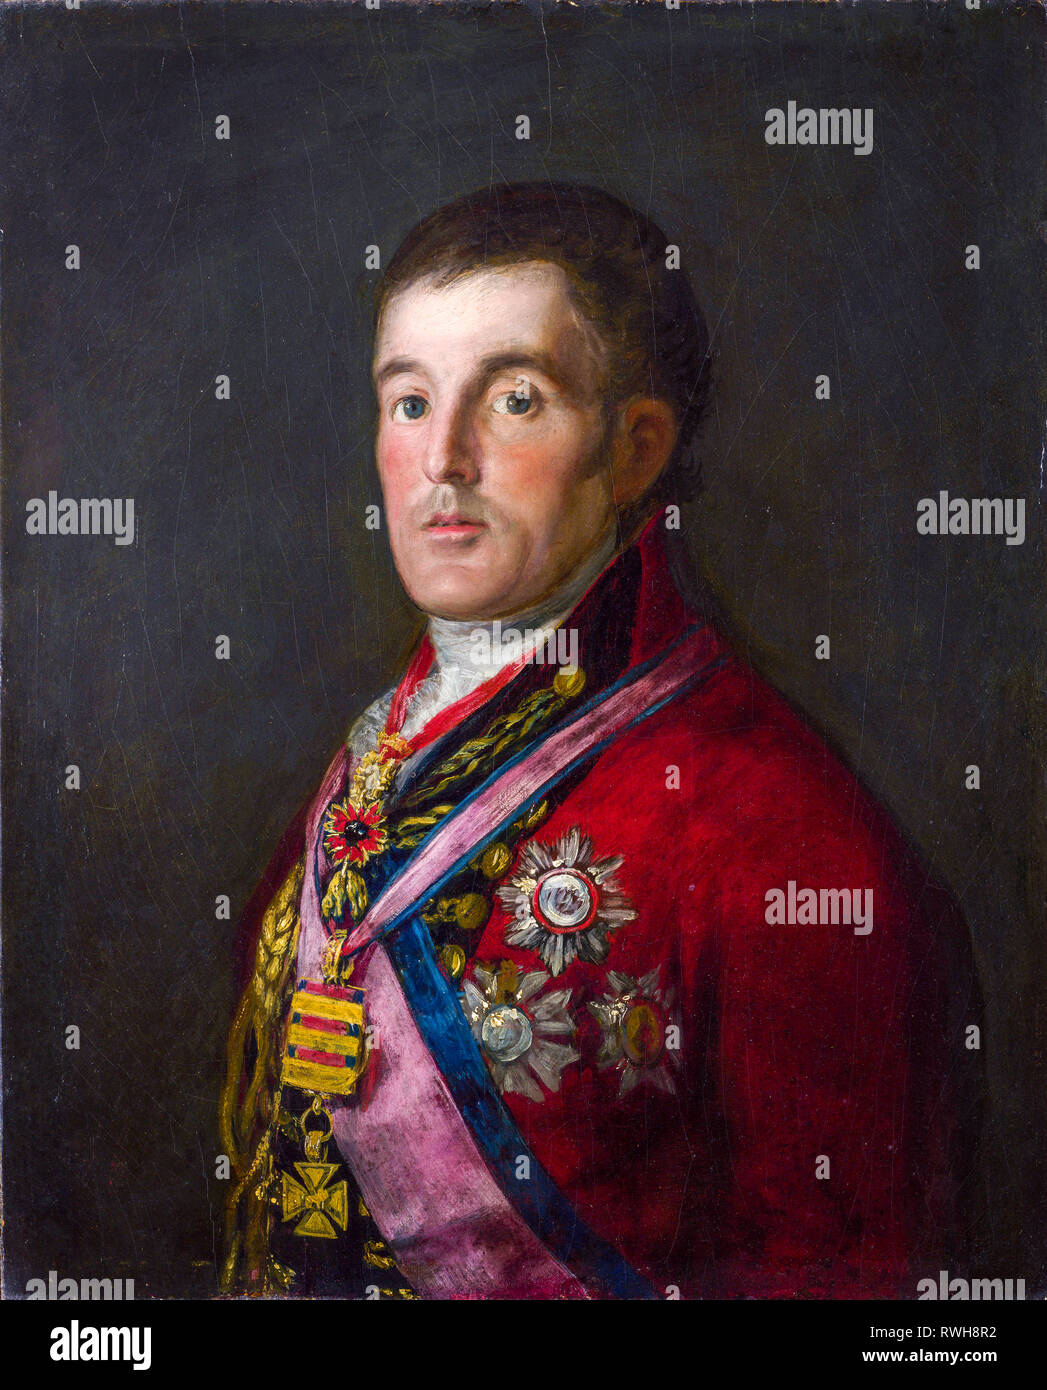 Arthur Wellesley, 1er duc de Wellington (1769-1852), portrait peint par Francisco Goya, vers 1812-1814 Banque D'Images